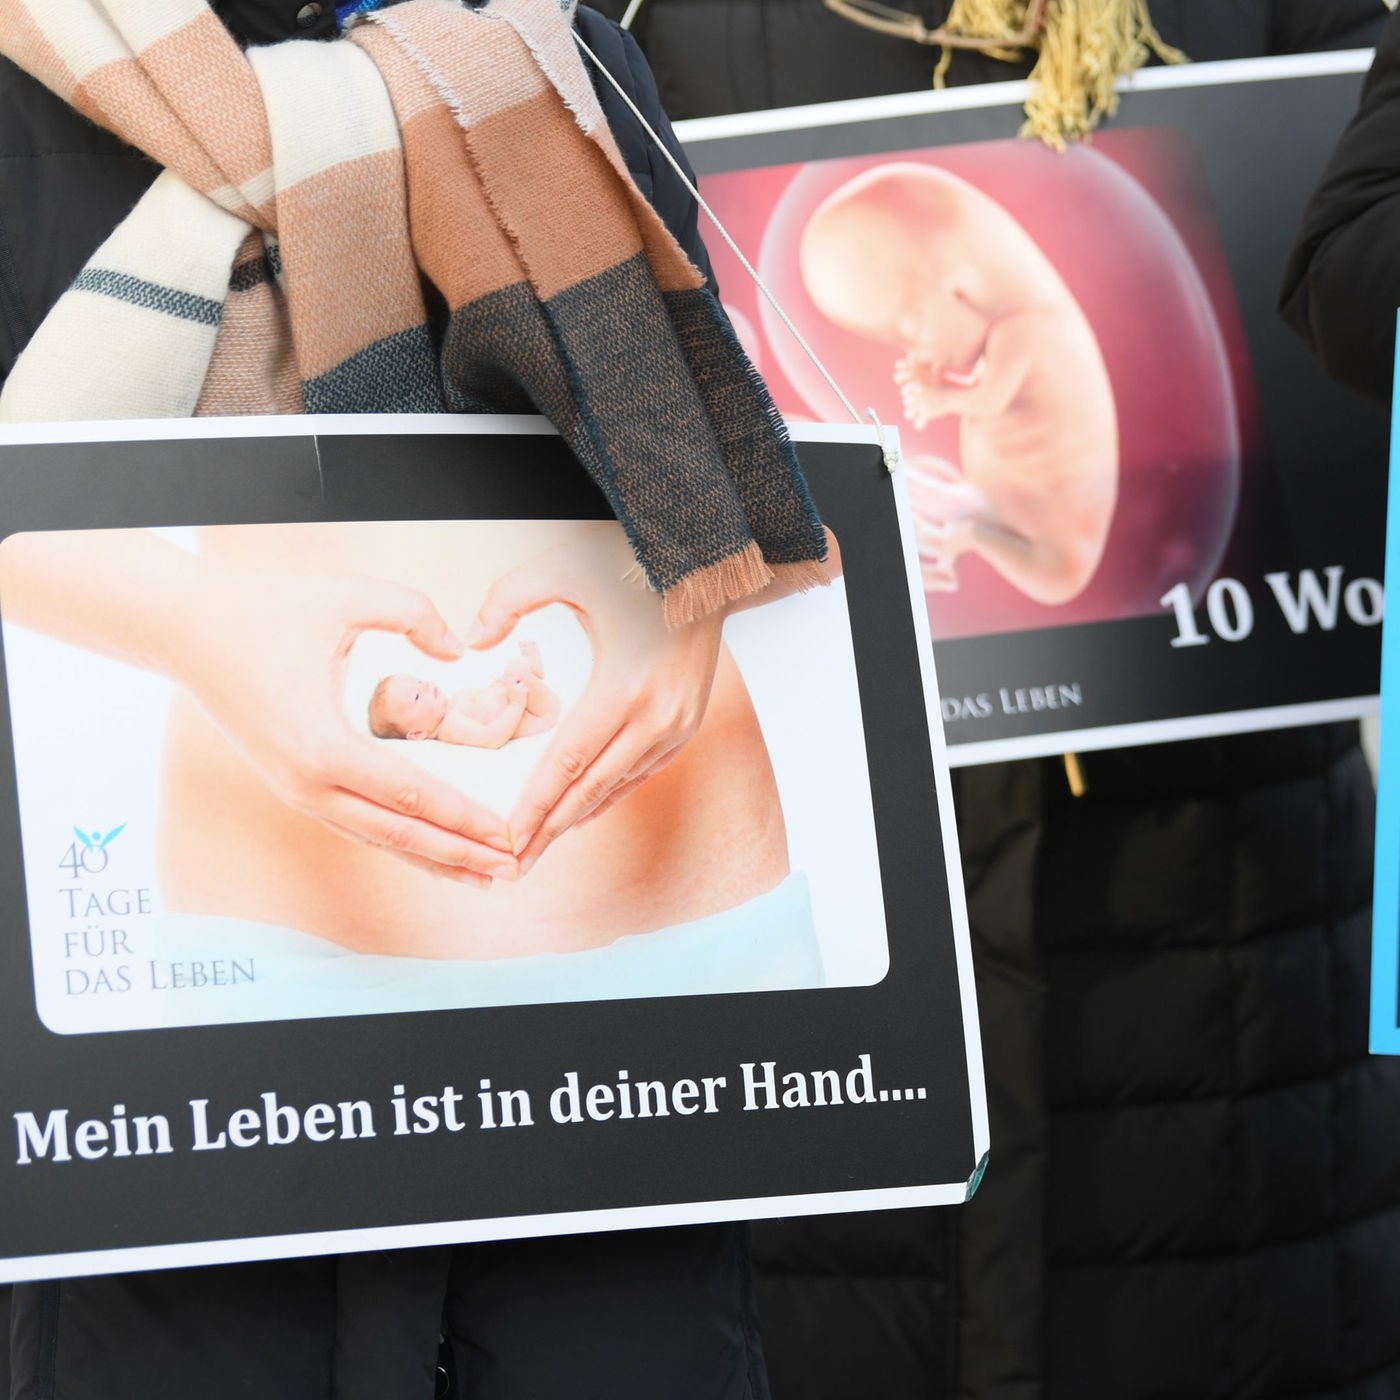 Abtreibung: Gesetzentwurf gegen "Gehsteigbelästigung"